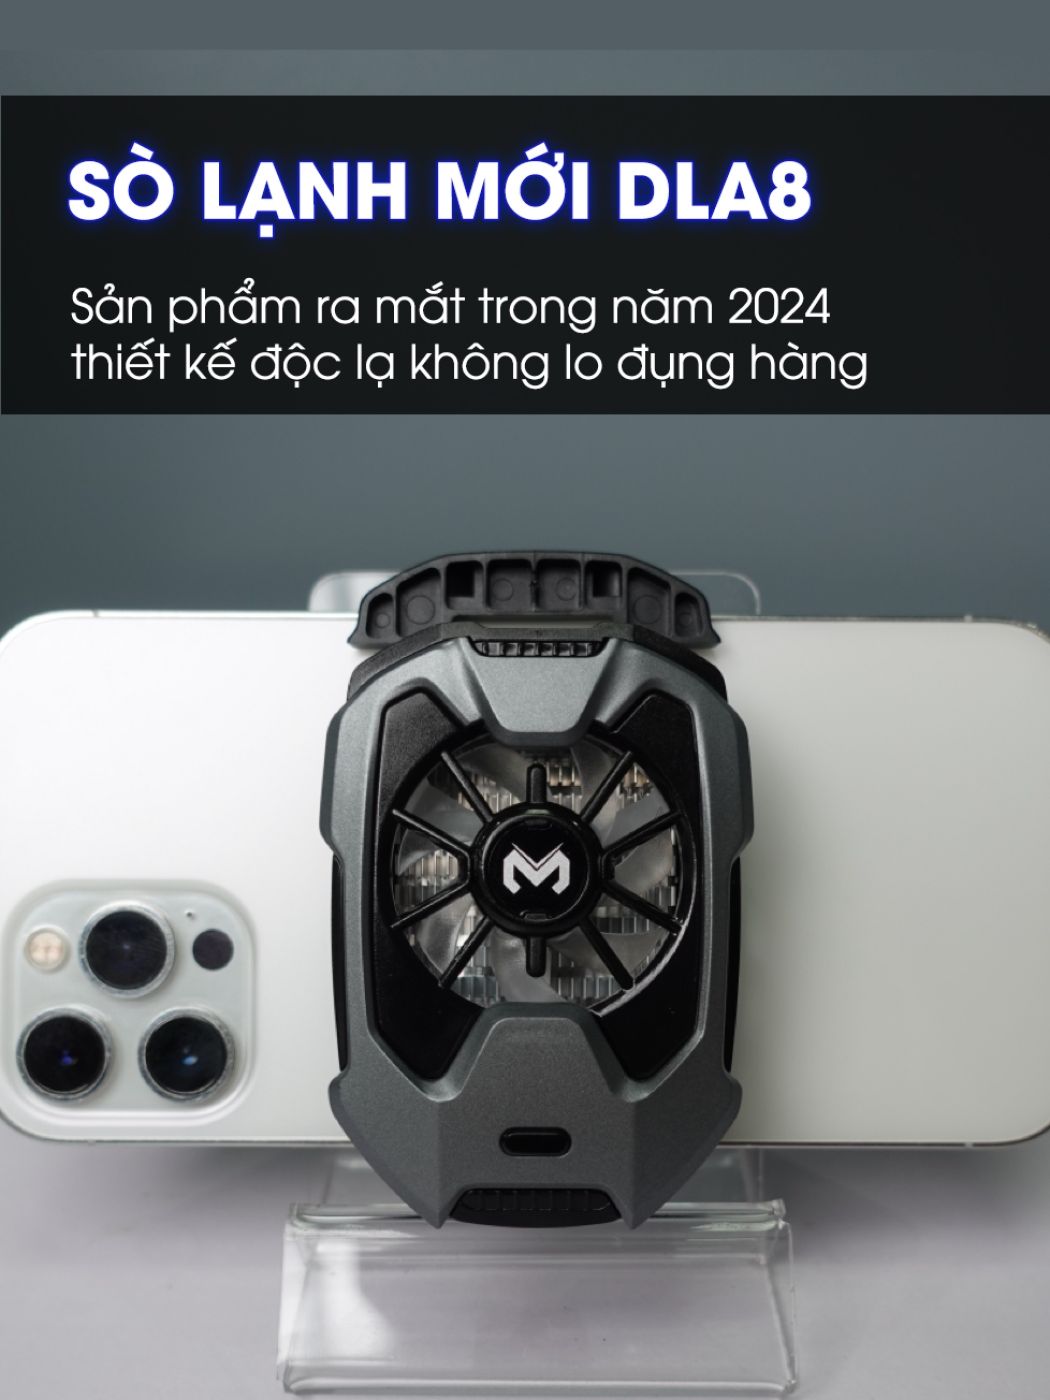 Quạt tản nhiệt điện thoại sò lạnh Memo DLA8 led RGB